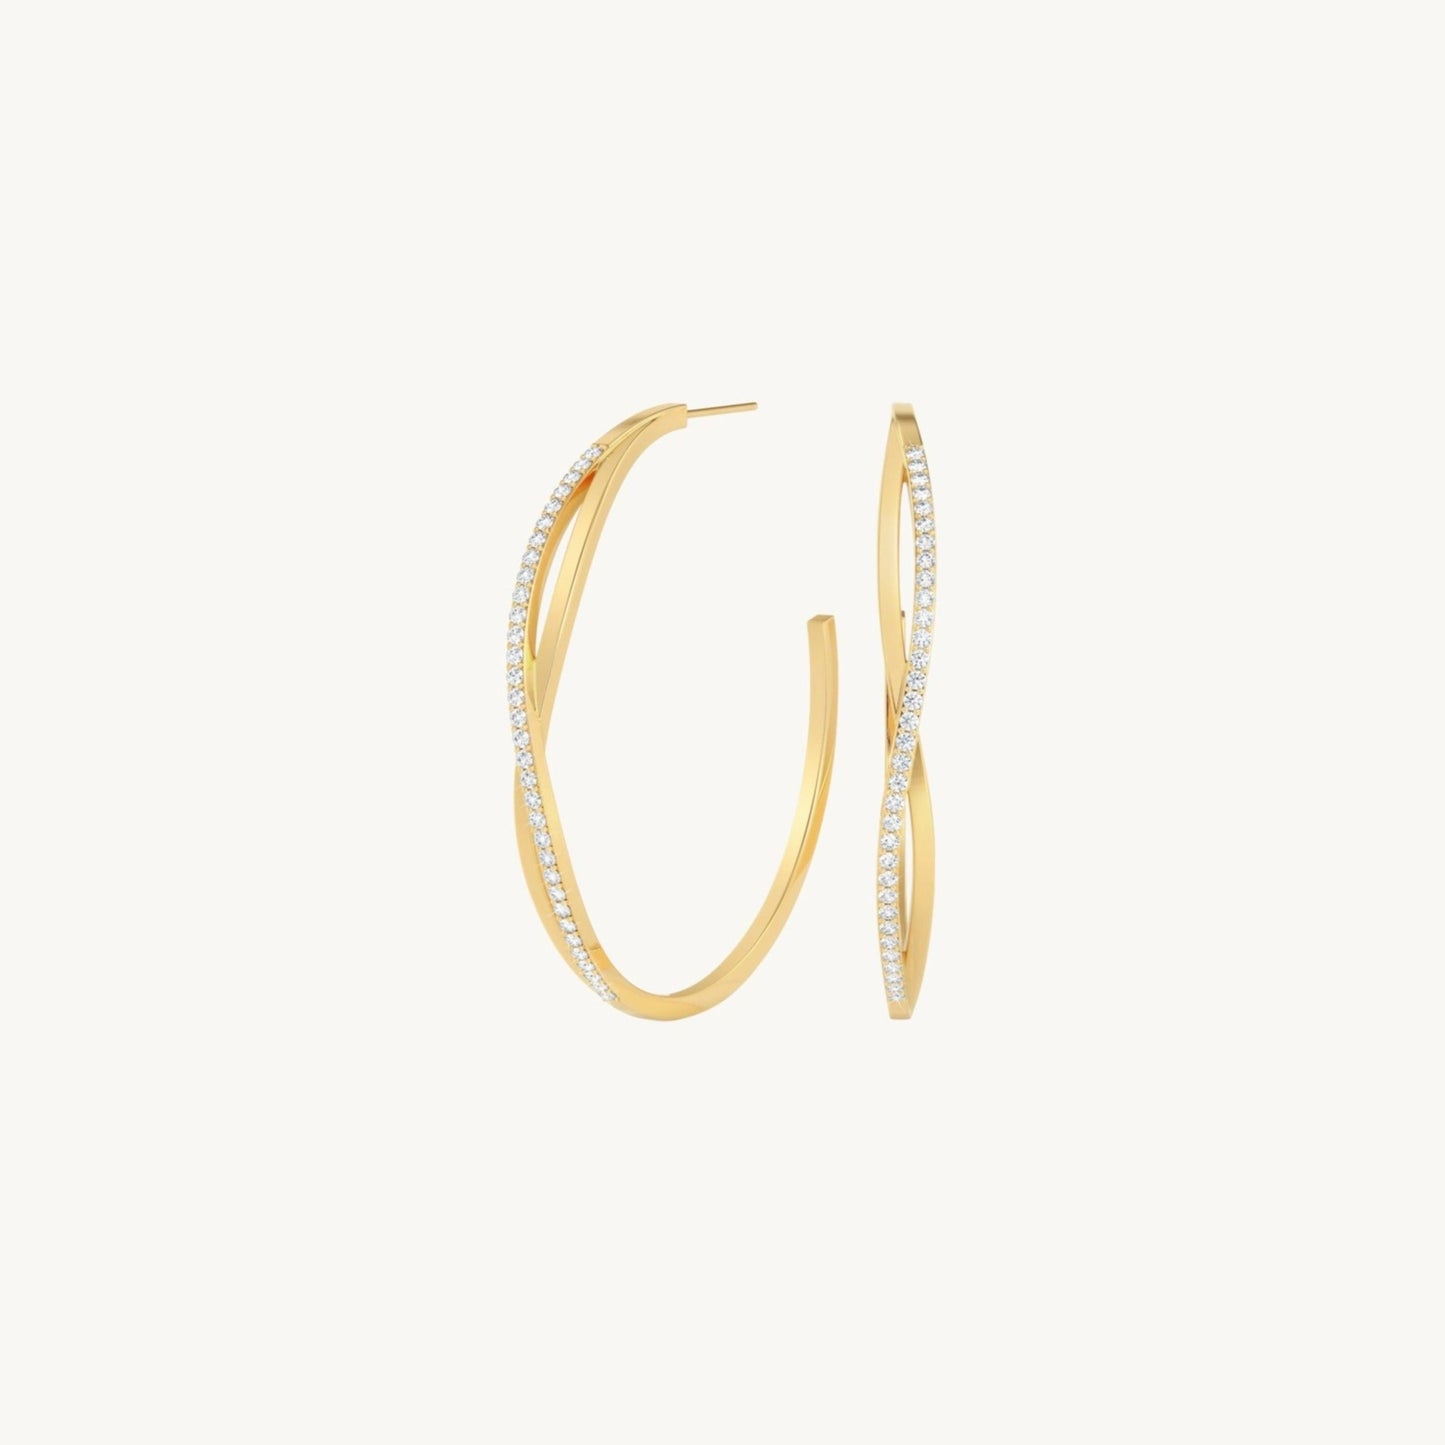 Hera loop earrings - gold plated